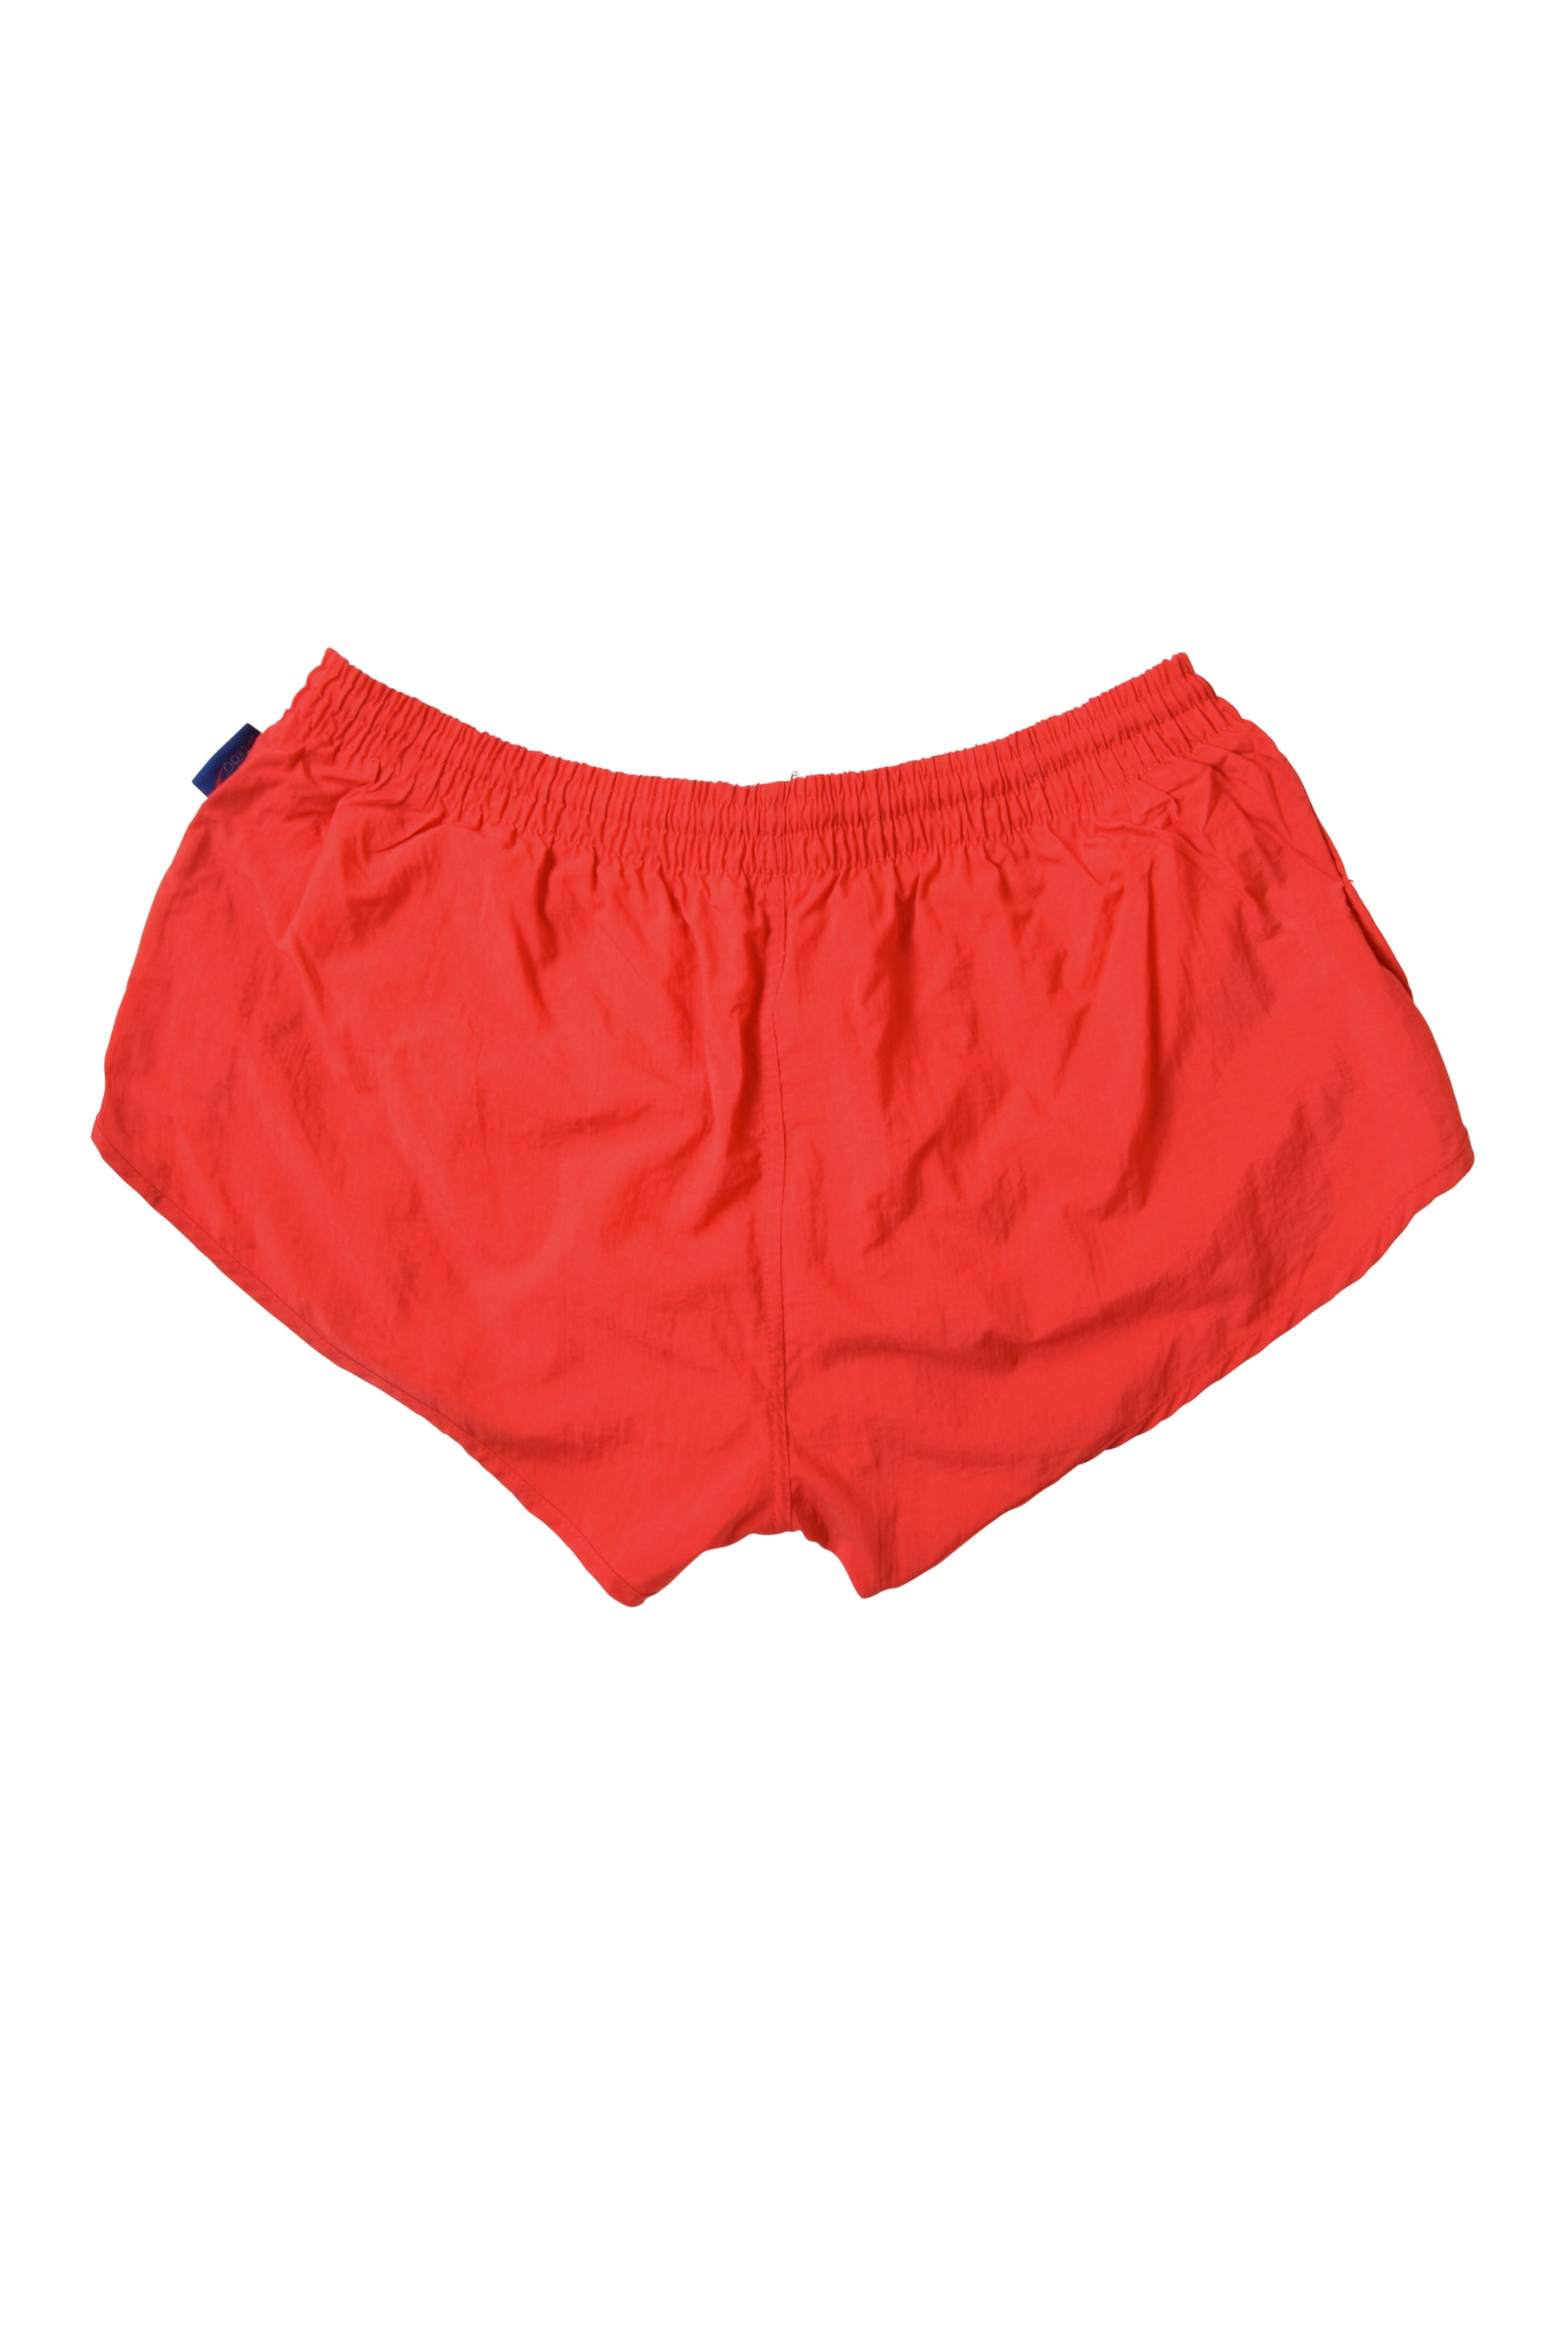 Vintage Speedo Shorts Size XL Red